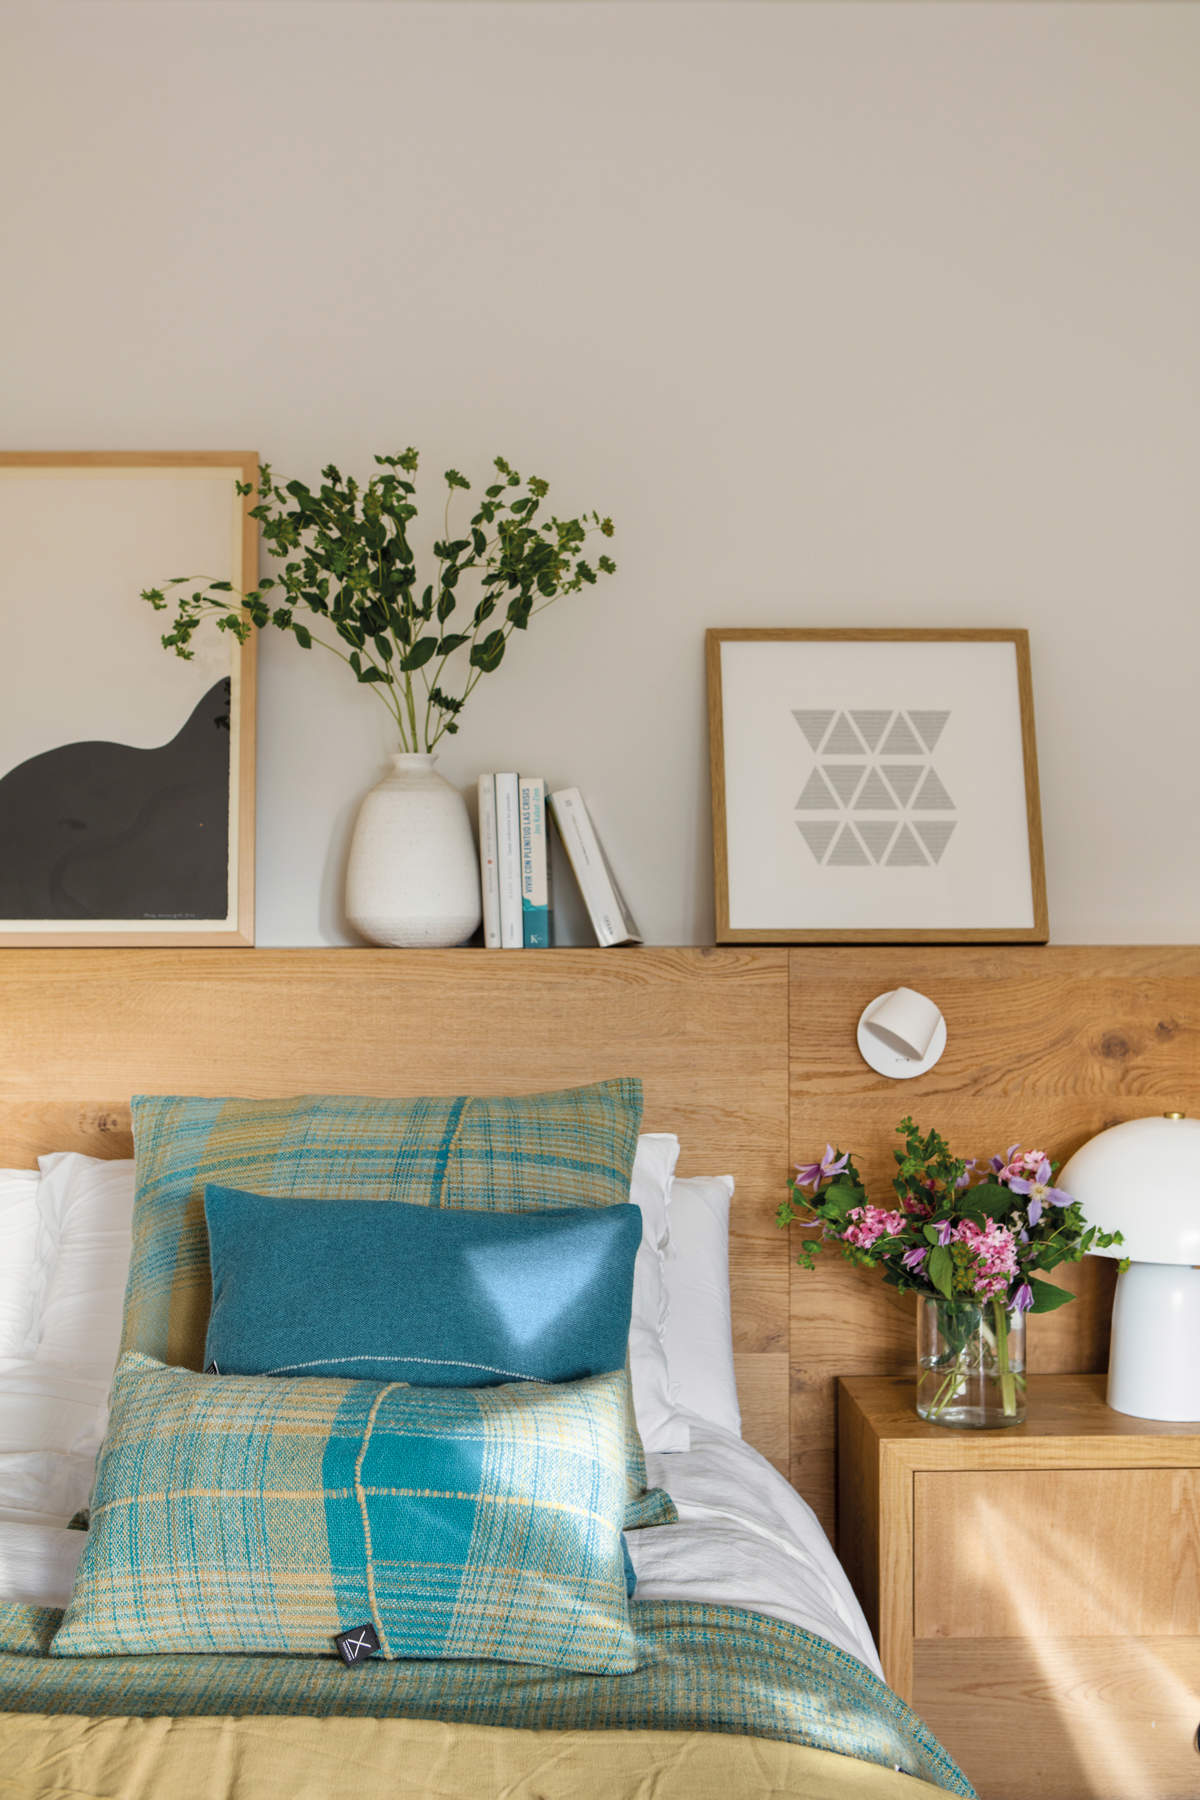 Dormitorio con cabecero en madera, flores frescas y cuadros.